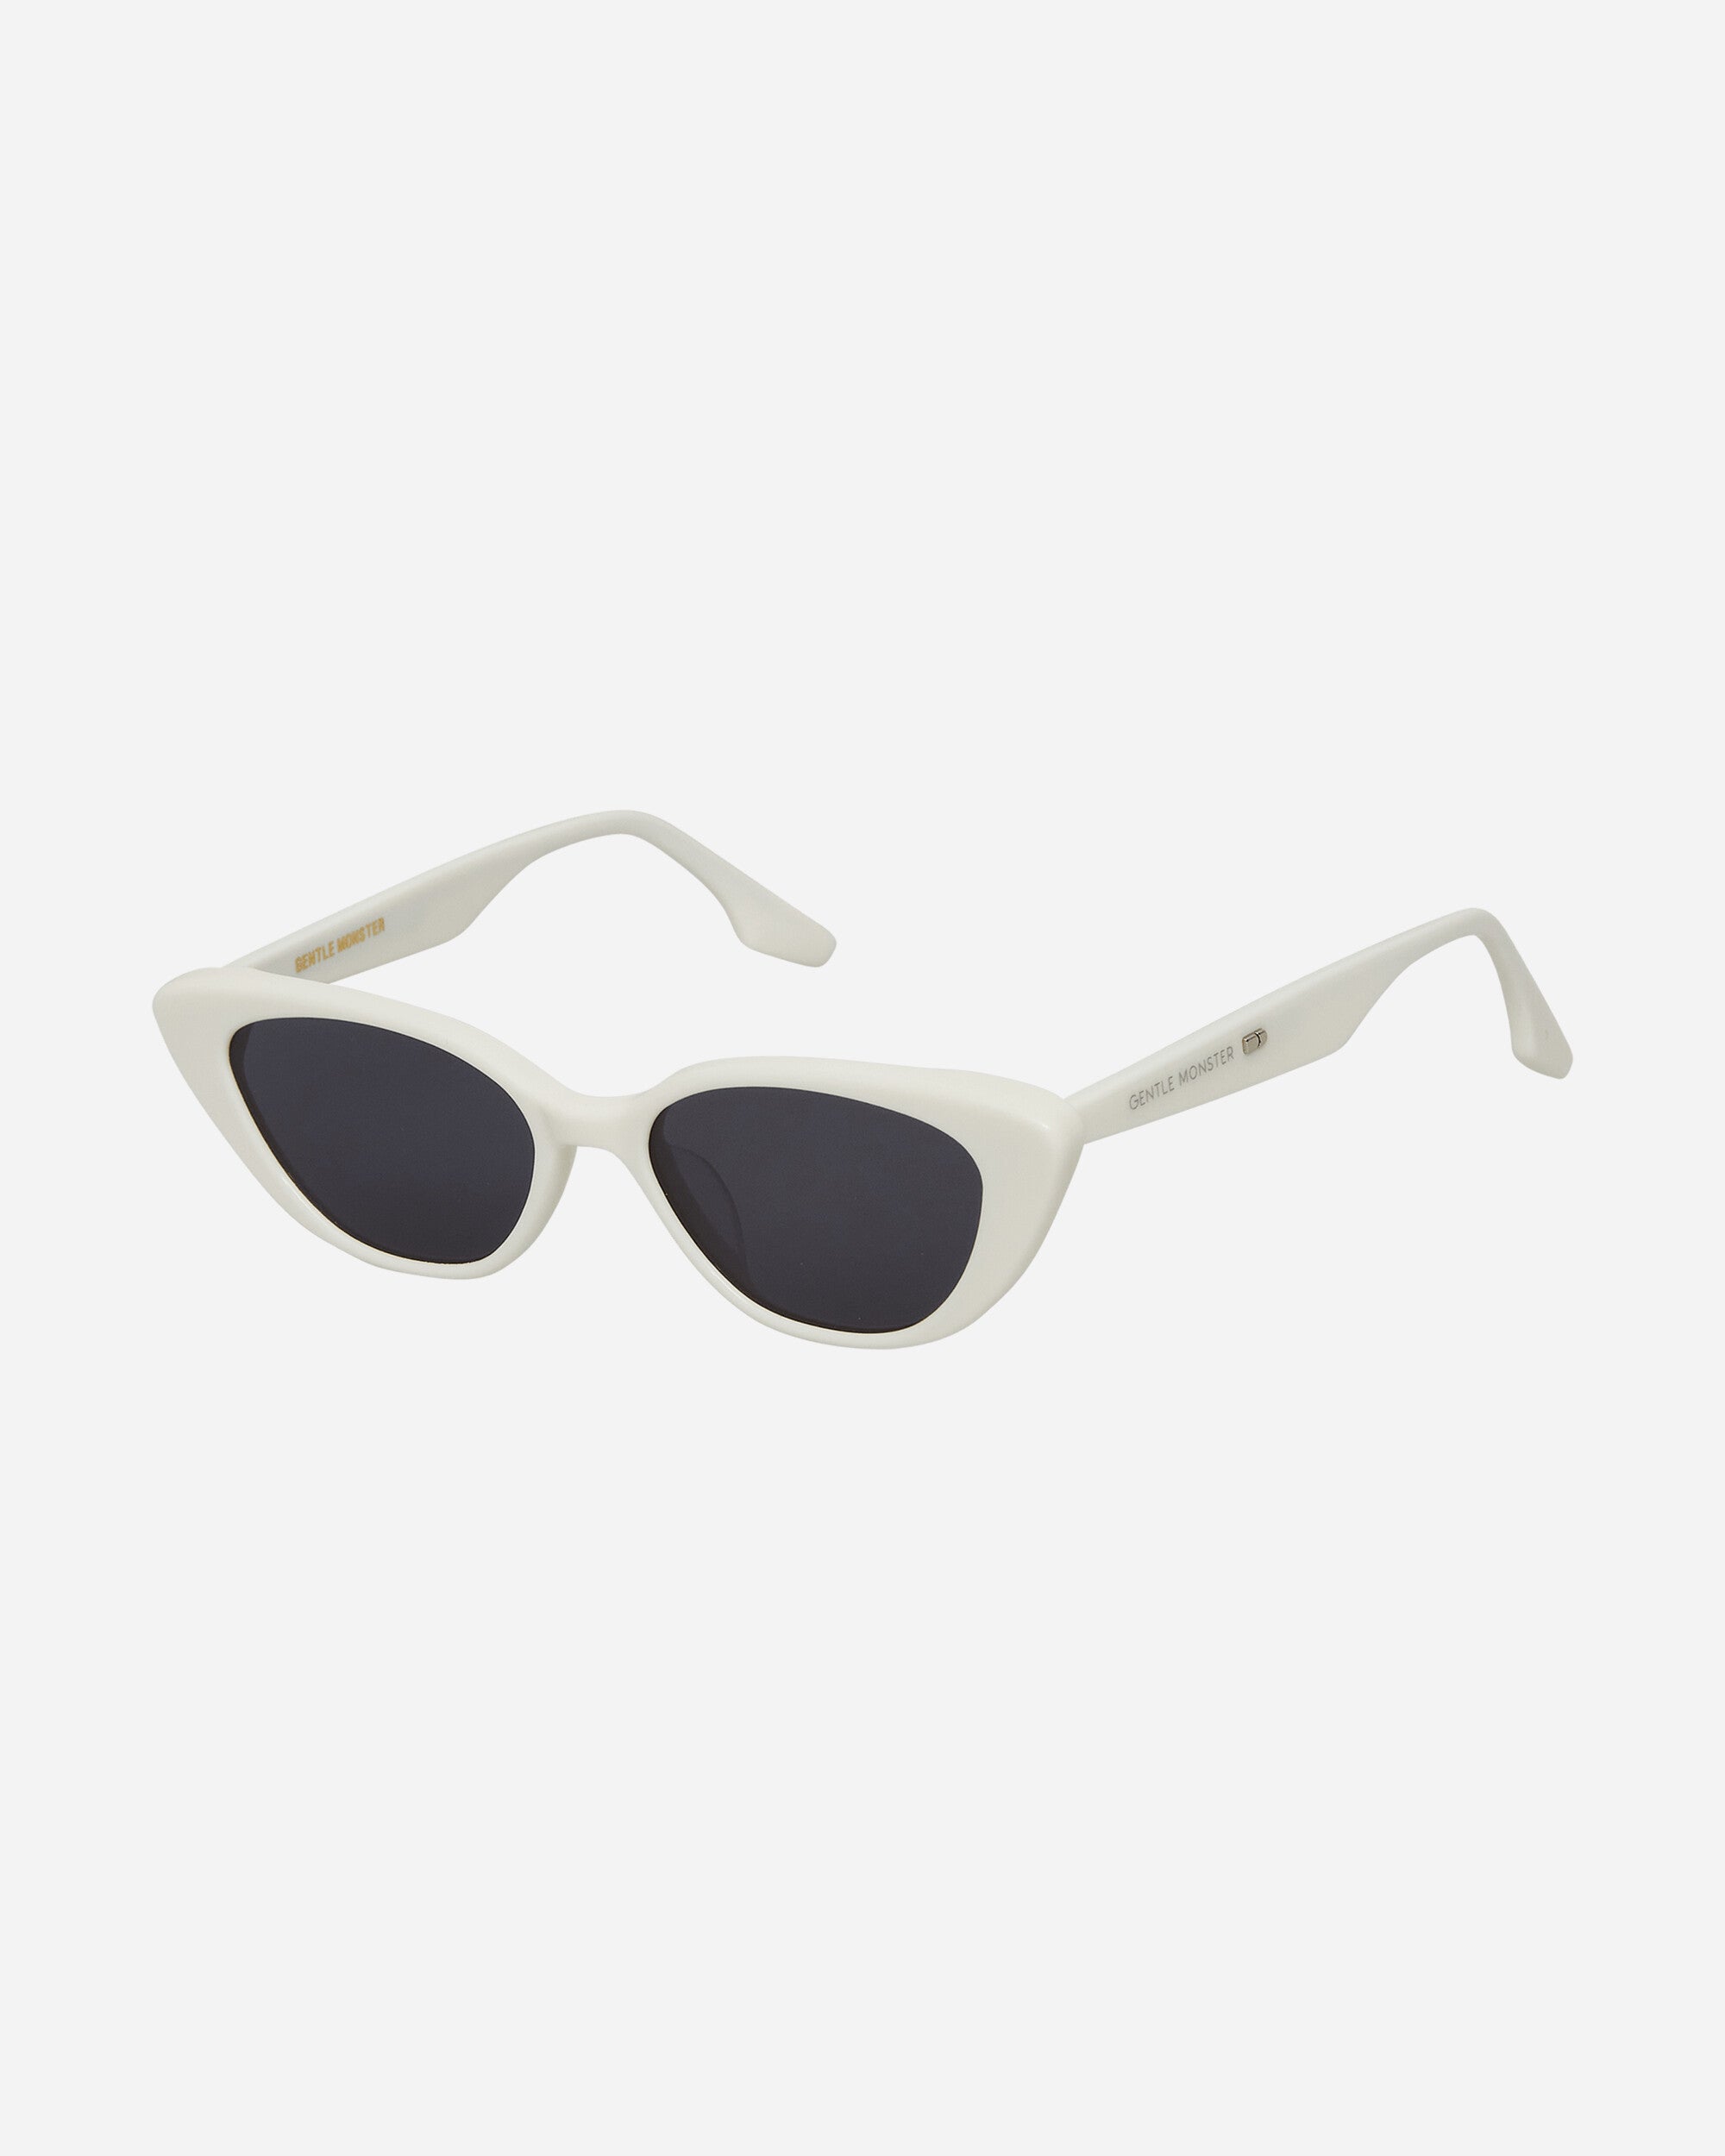 Crella W1 Sunglasses White